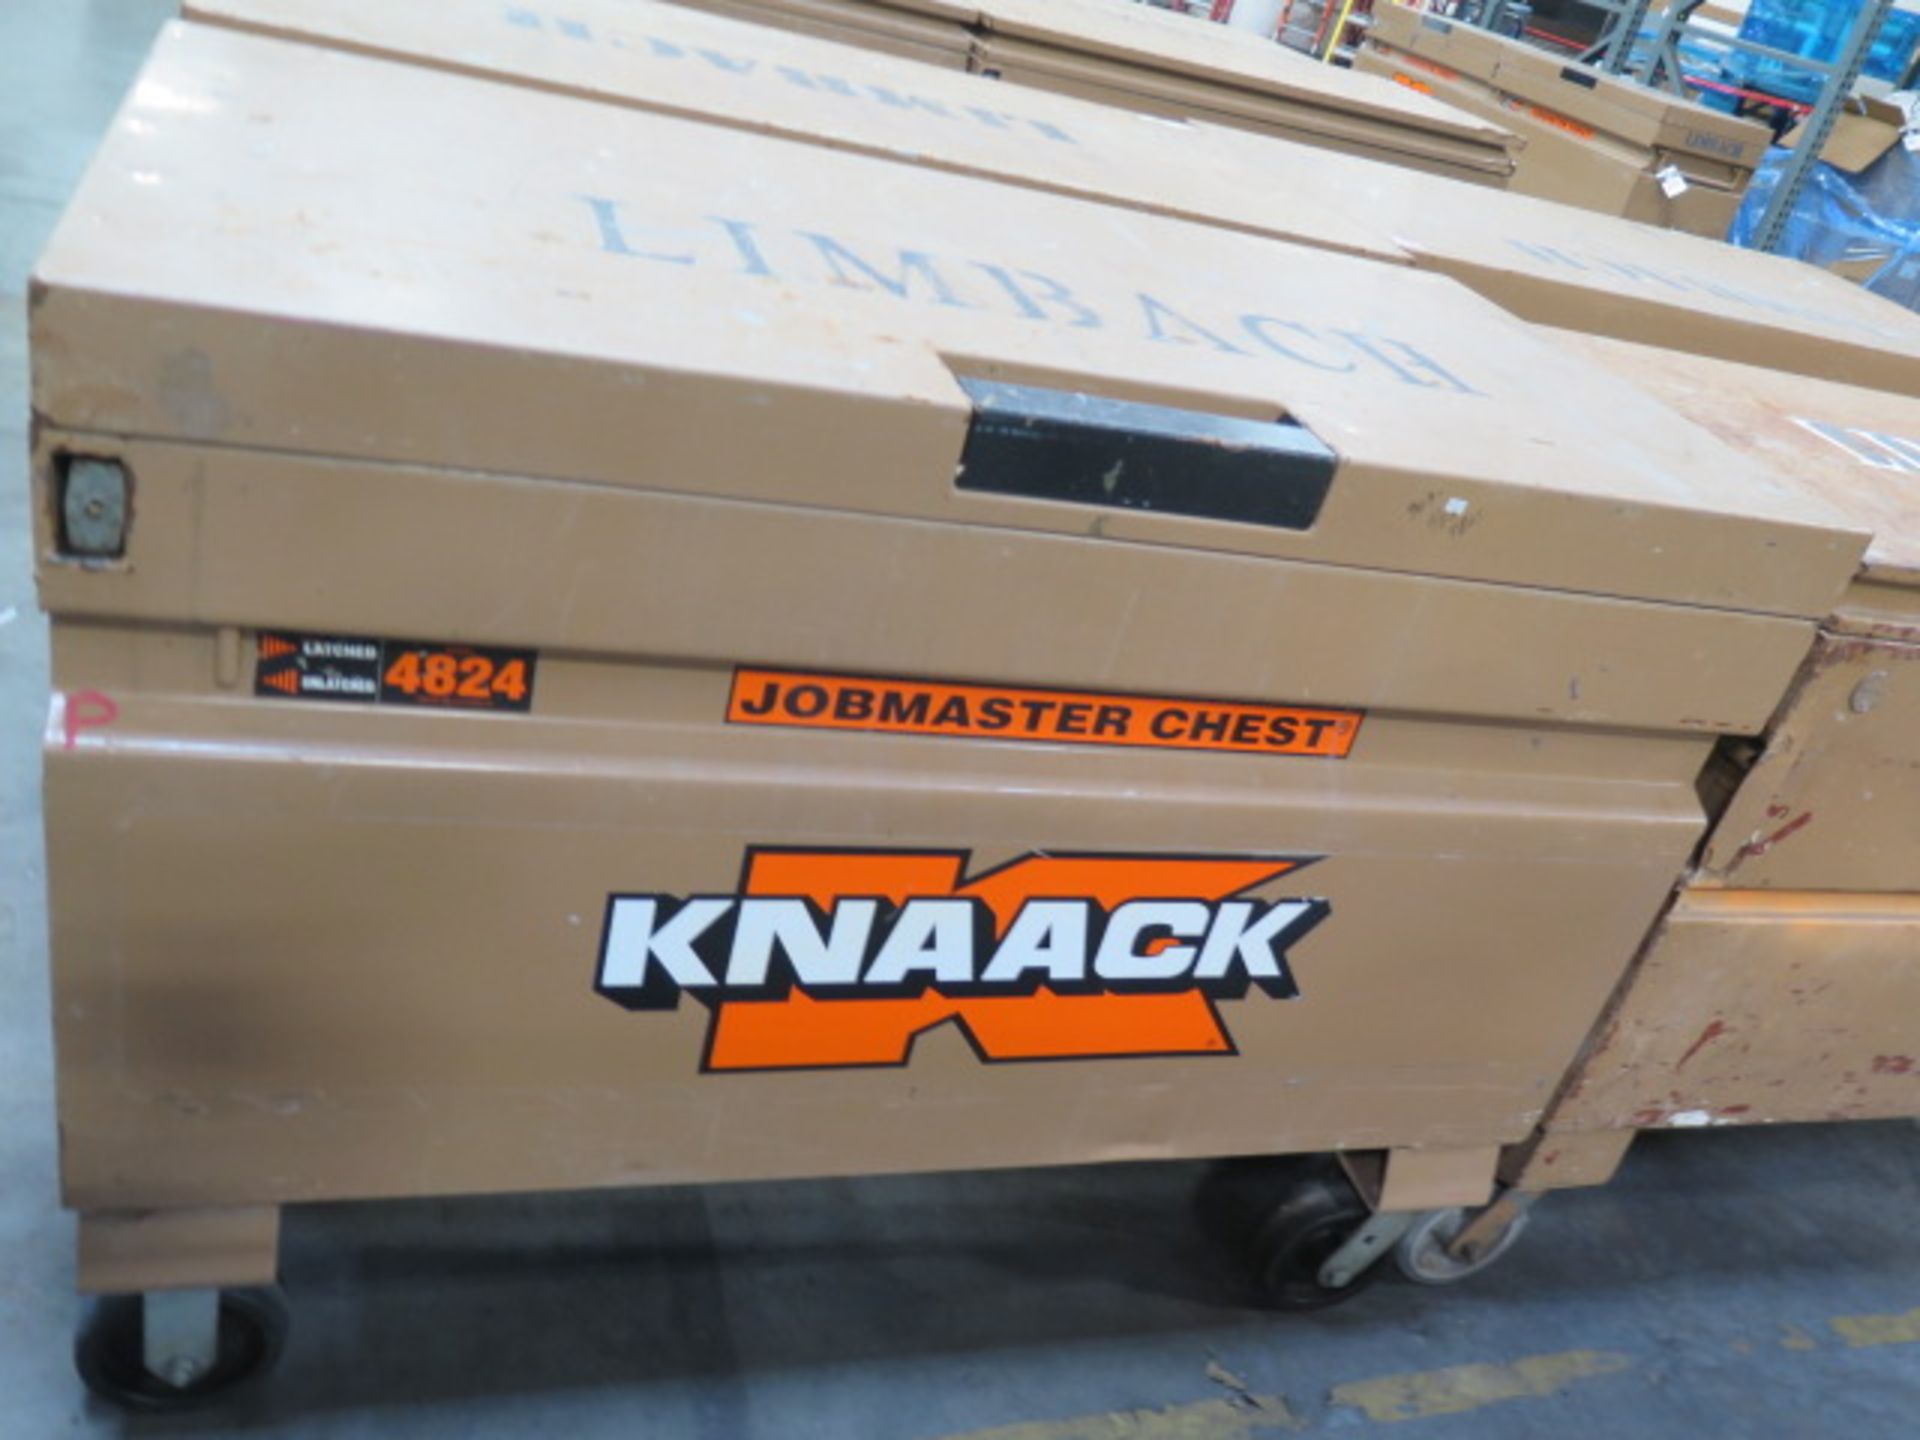 Knaack mdl. 4824 Rolling Job Box (SOLD AS-IS - NO WARRANTY)